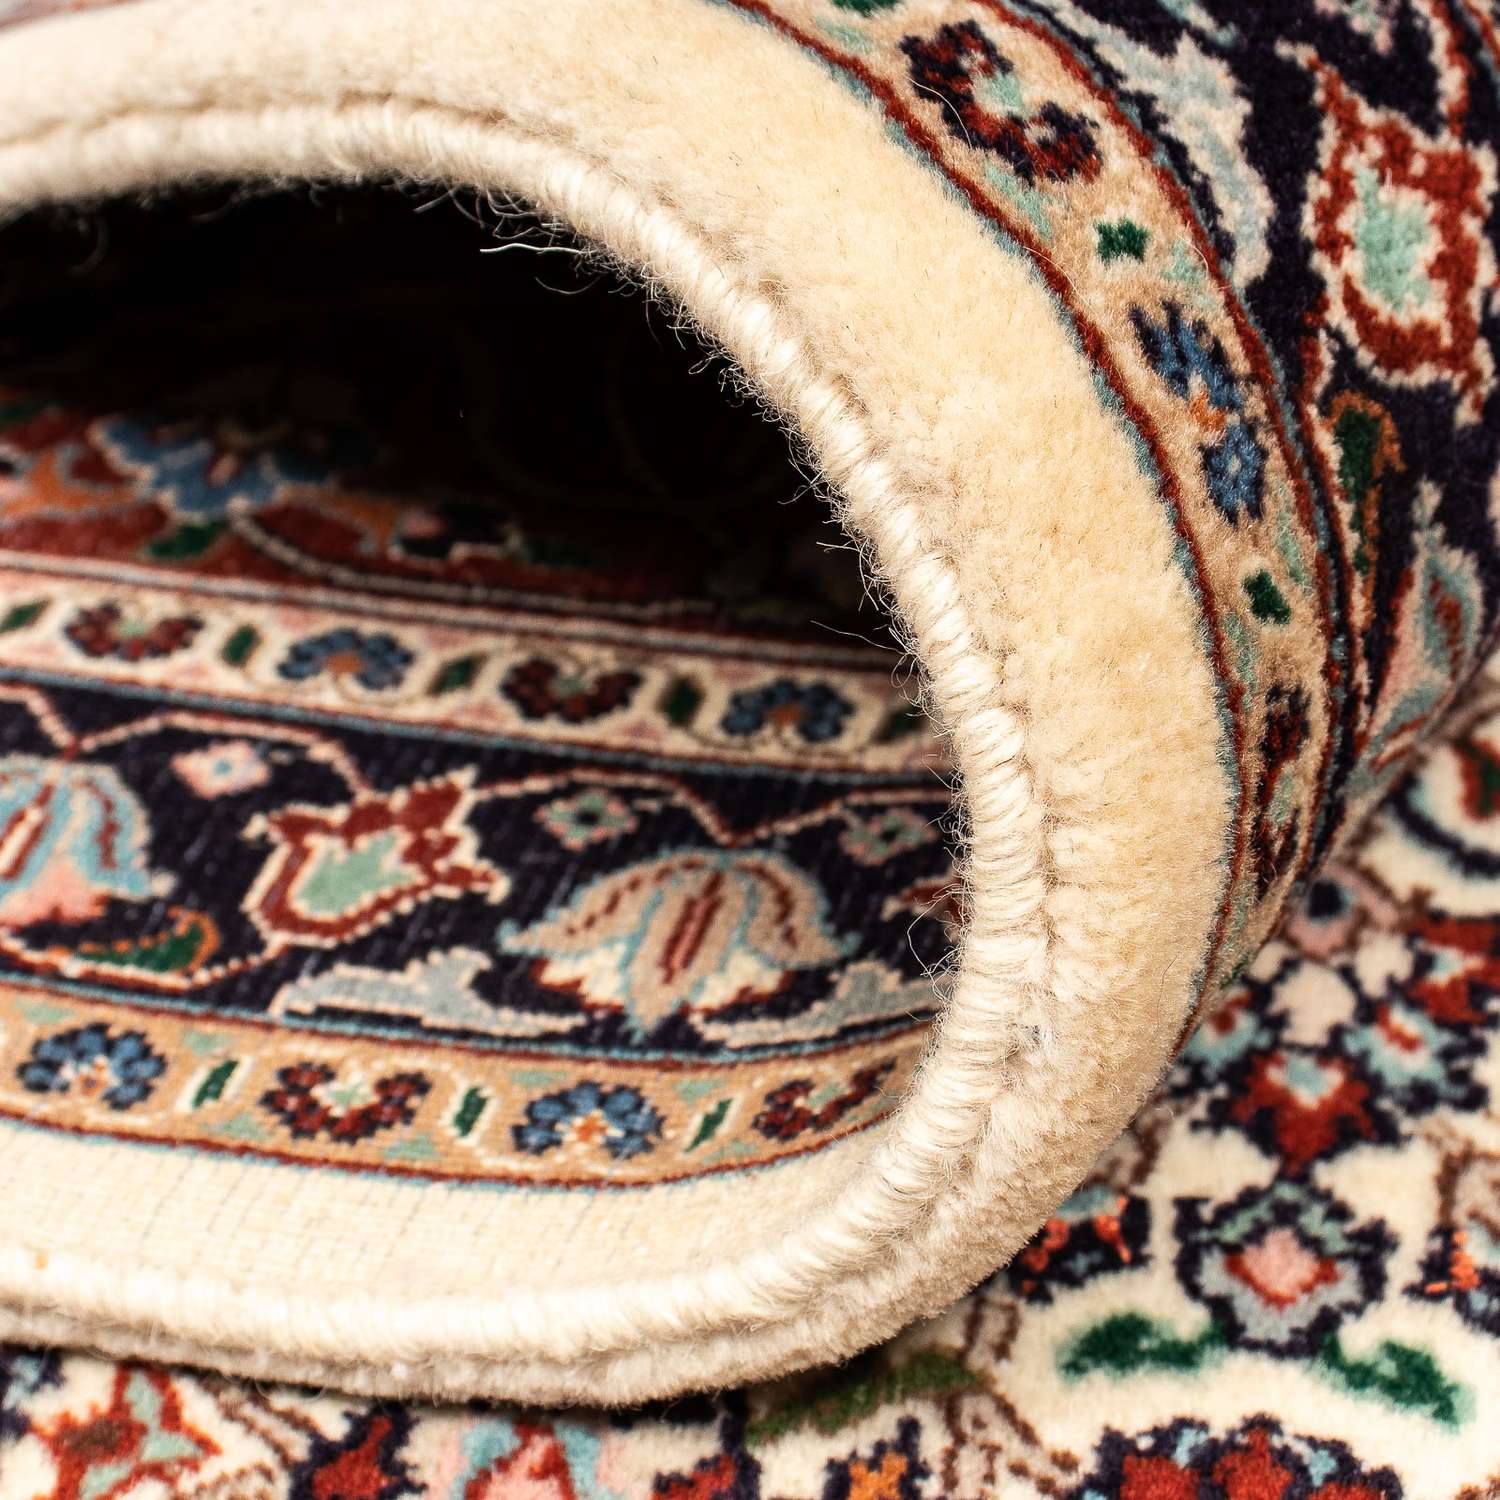 Perzisch tapijt - Klassiek - 337 x 248 cm - beige